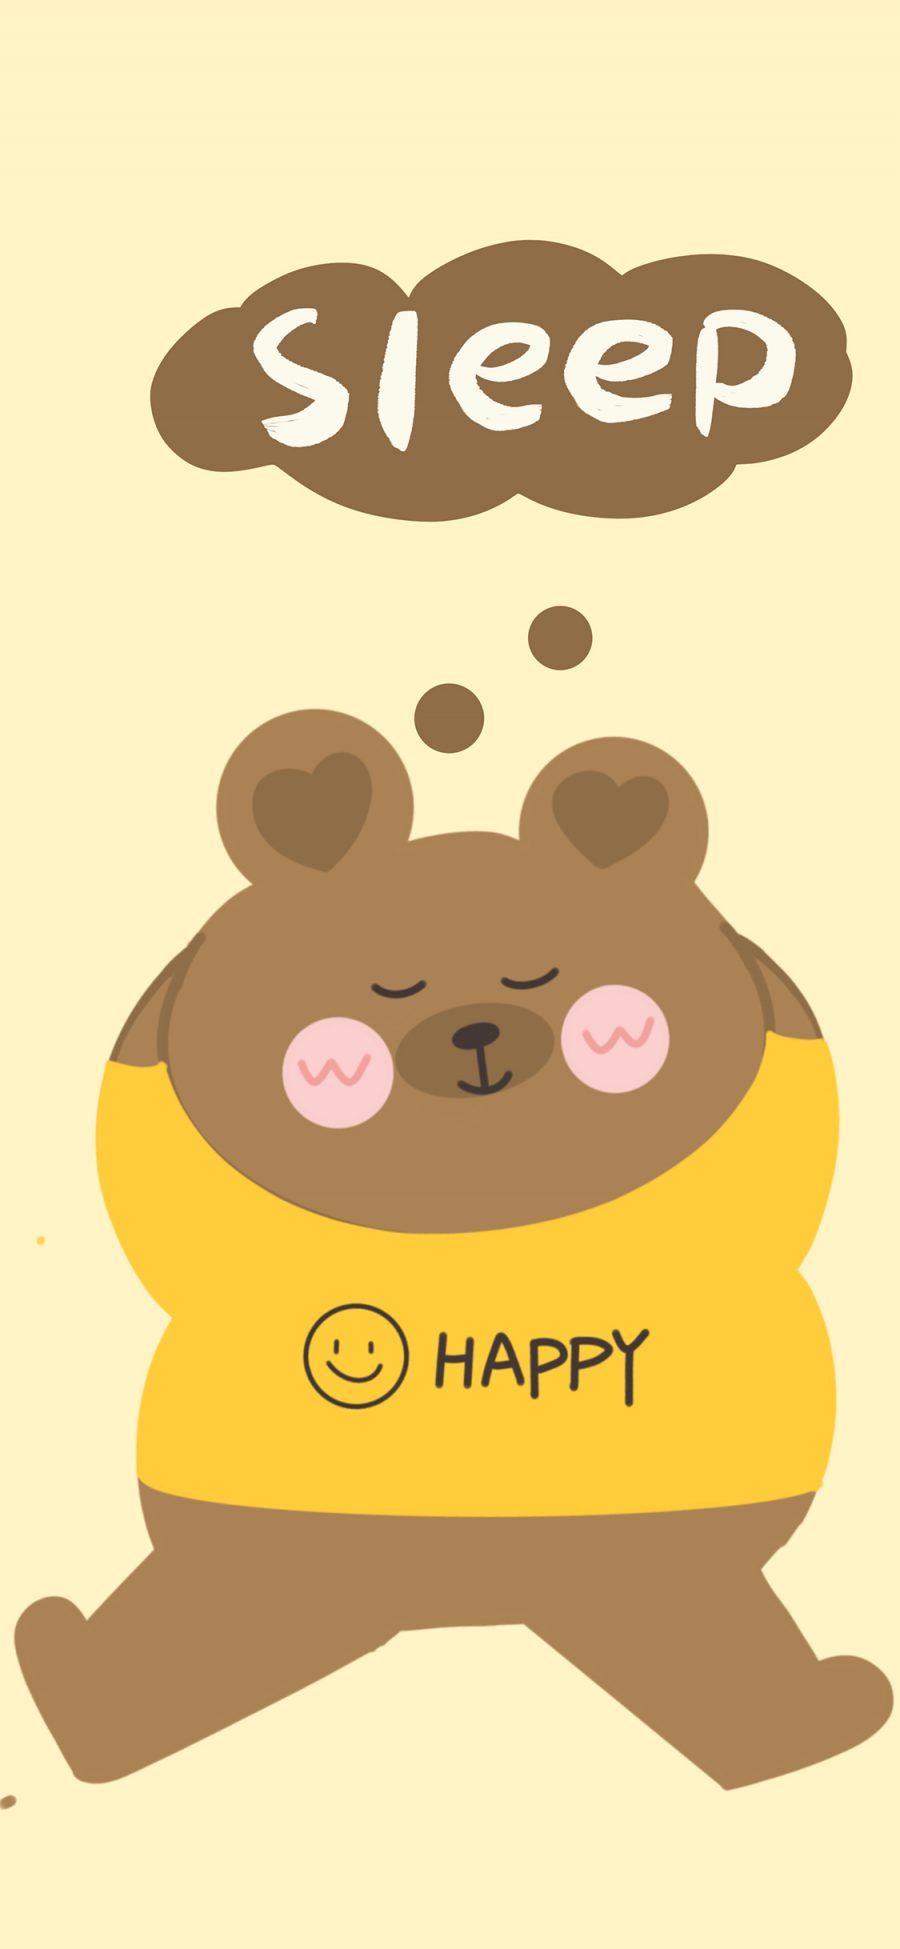 [2436×1125]小熊 sleep happy 可爱 苹果手机动漫壁纸图片